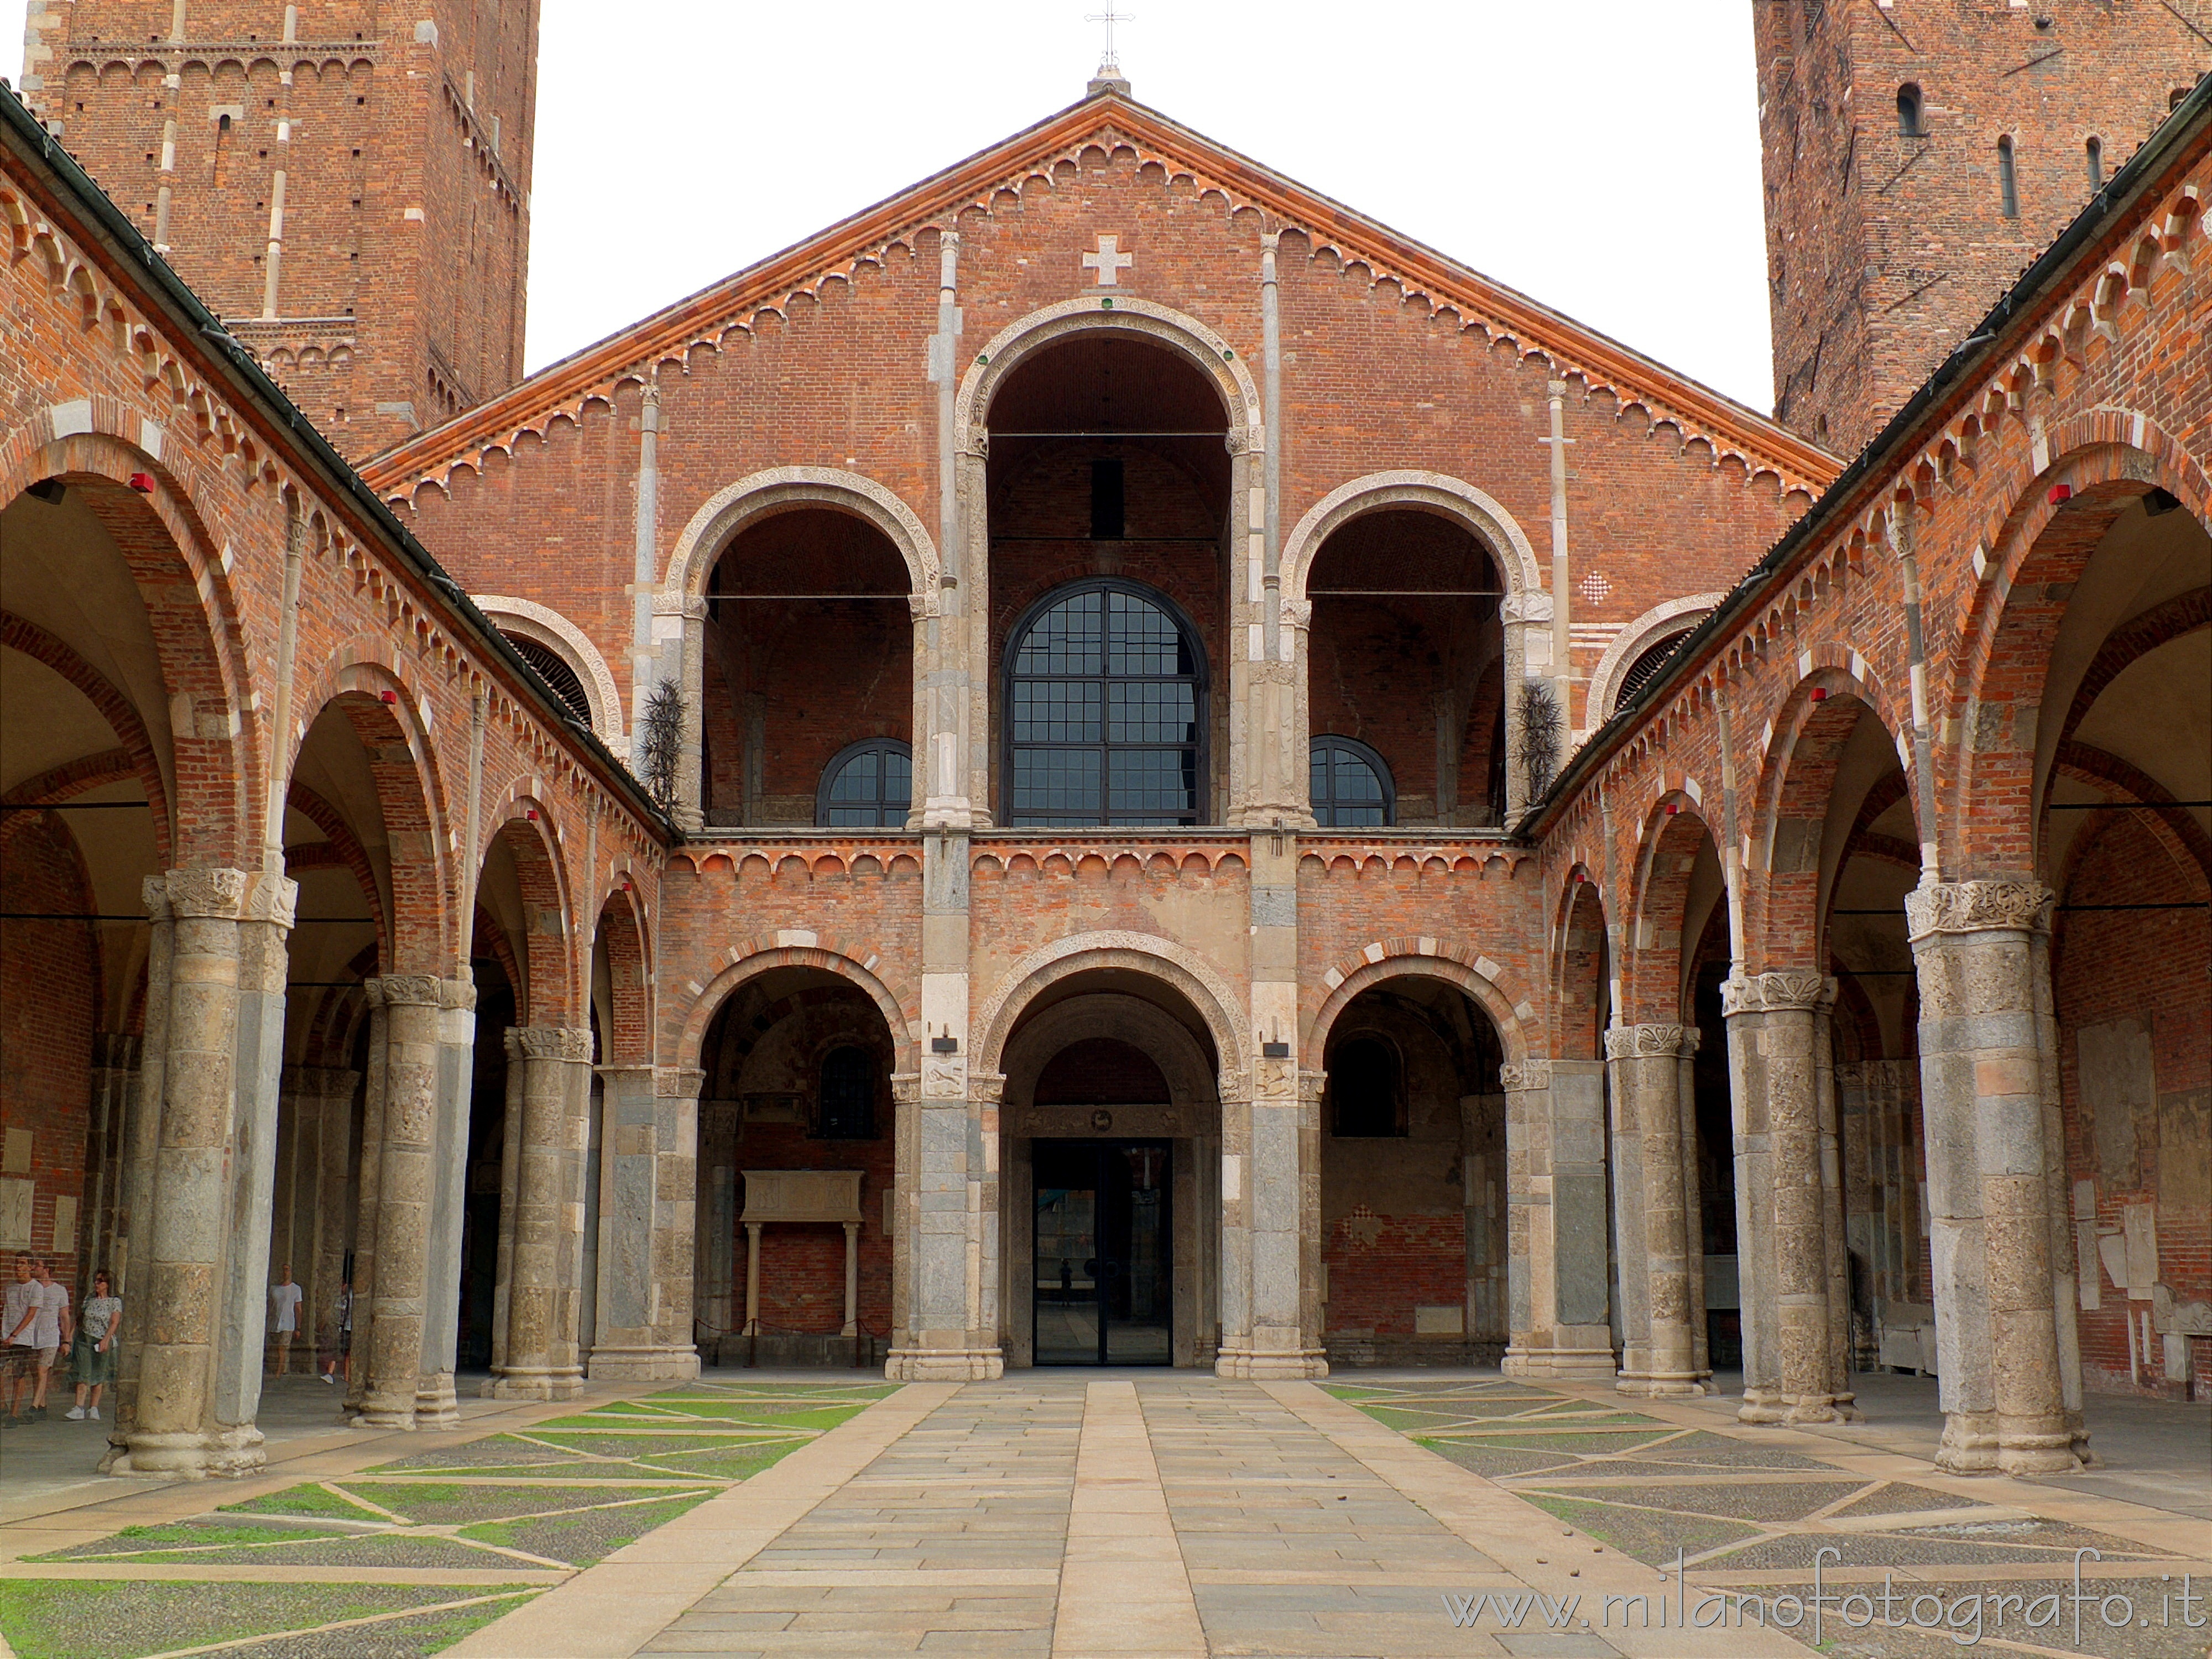 Milan (Italy): Facade of the Basilica of Sant'Ambrogio - Milan (Italy)